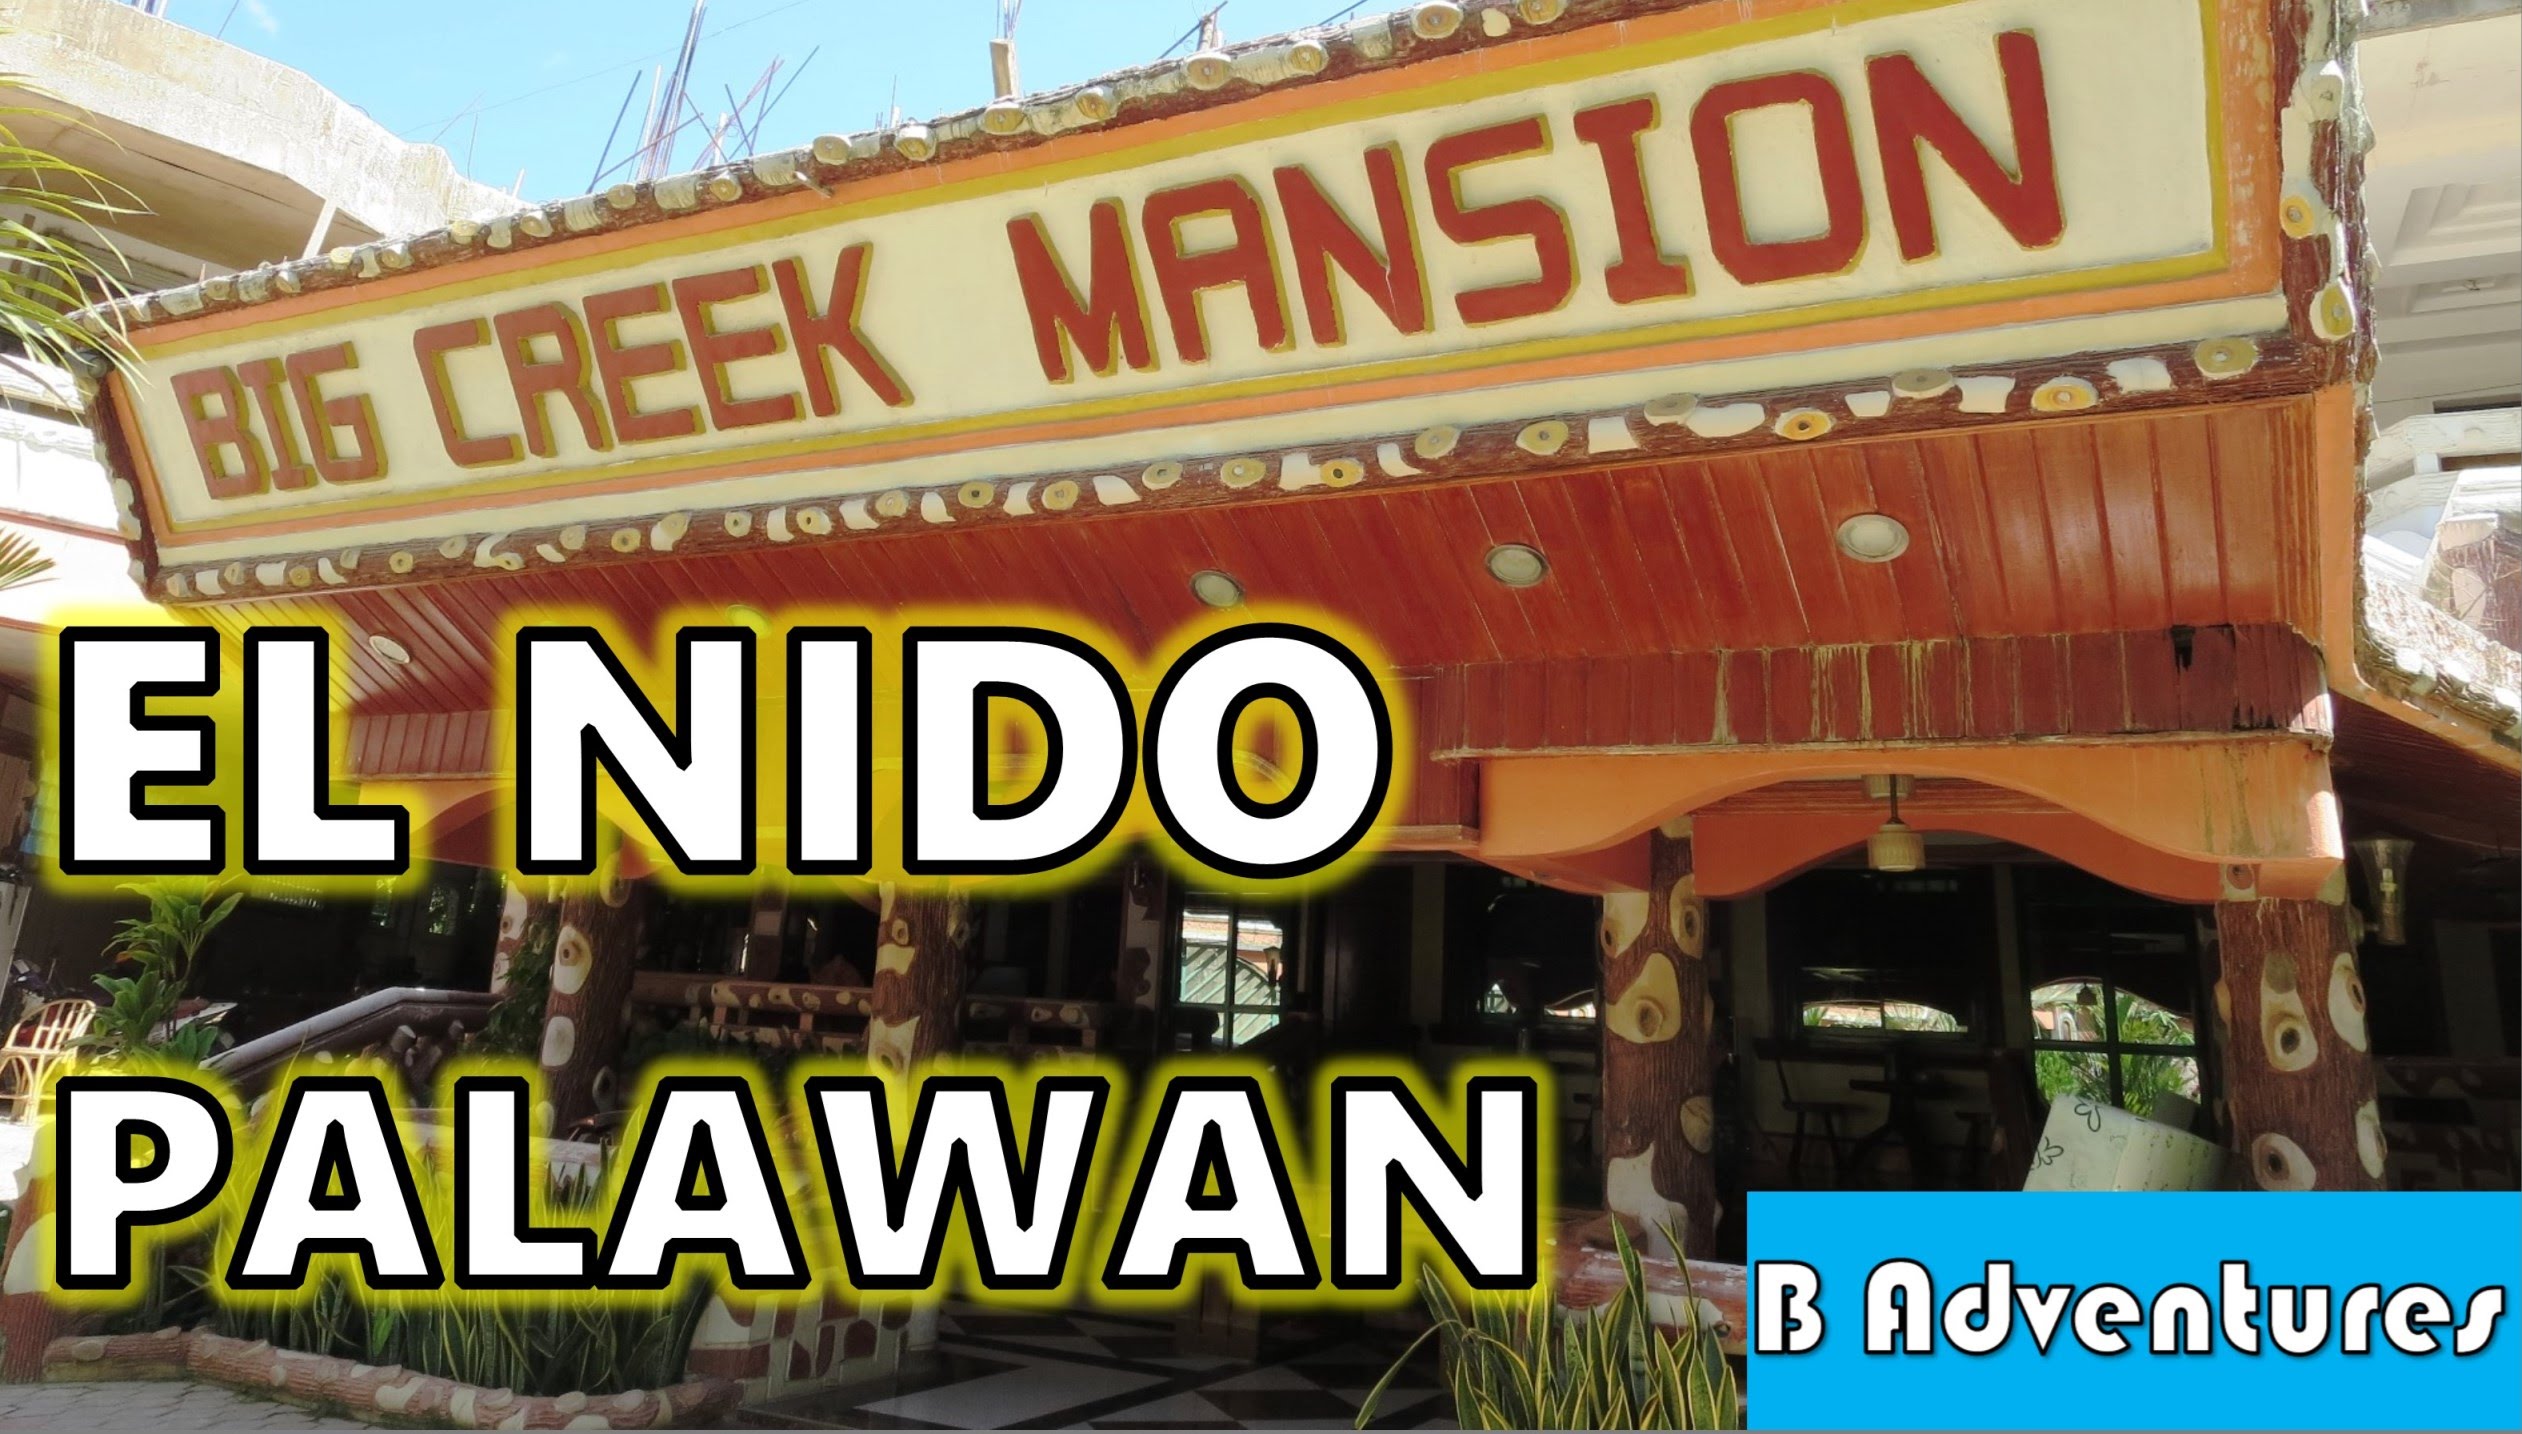 El Nido: Big Creek Mansion (FAIL), Palawan Philippines S3, Vlog #56 ...